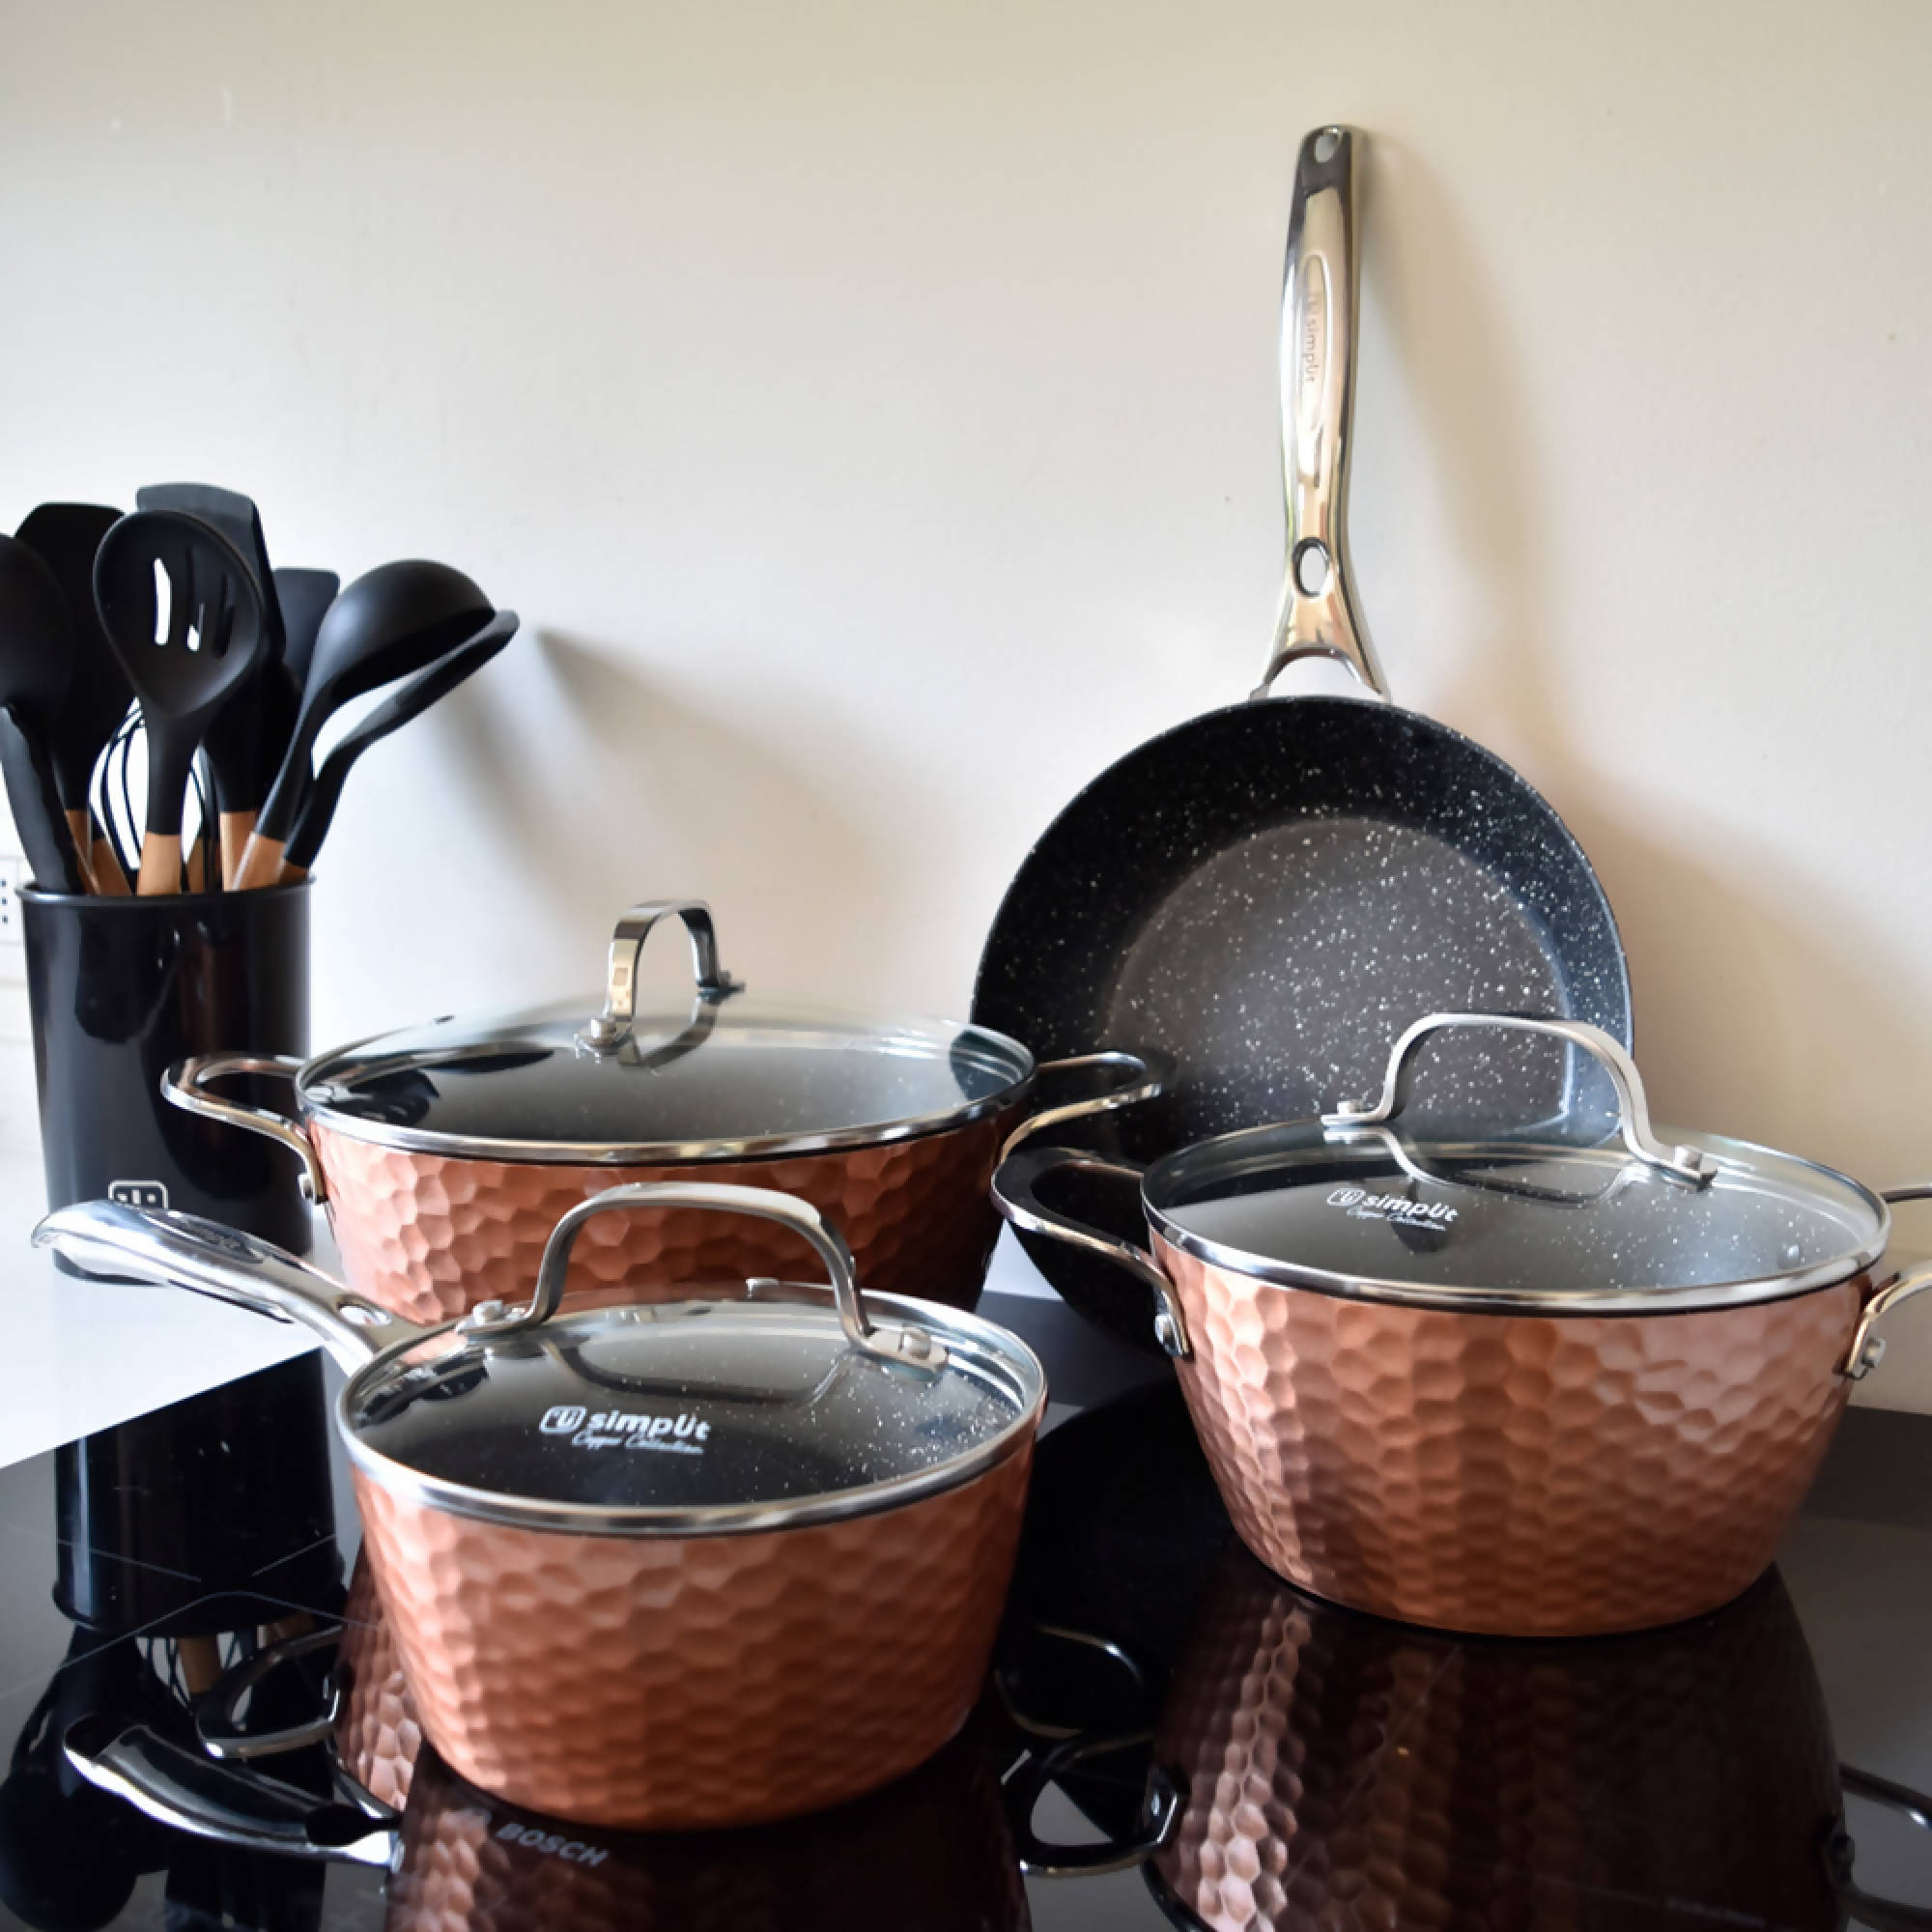 Estantes de cocina con sartenes de cobre, ollas y otros utensilios